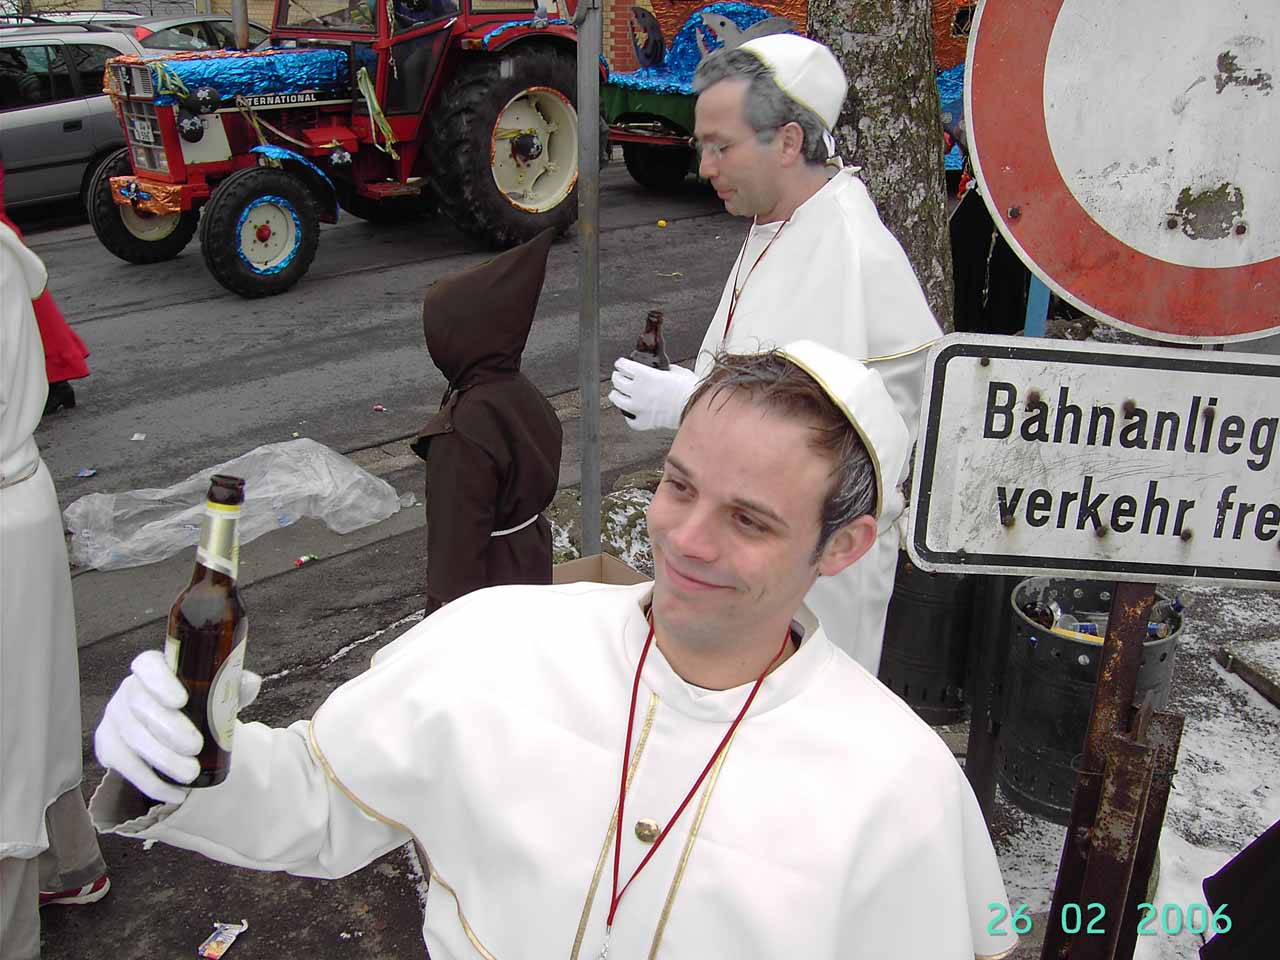 Karneval 2006